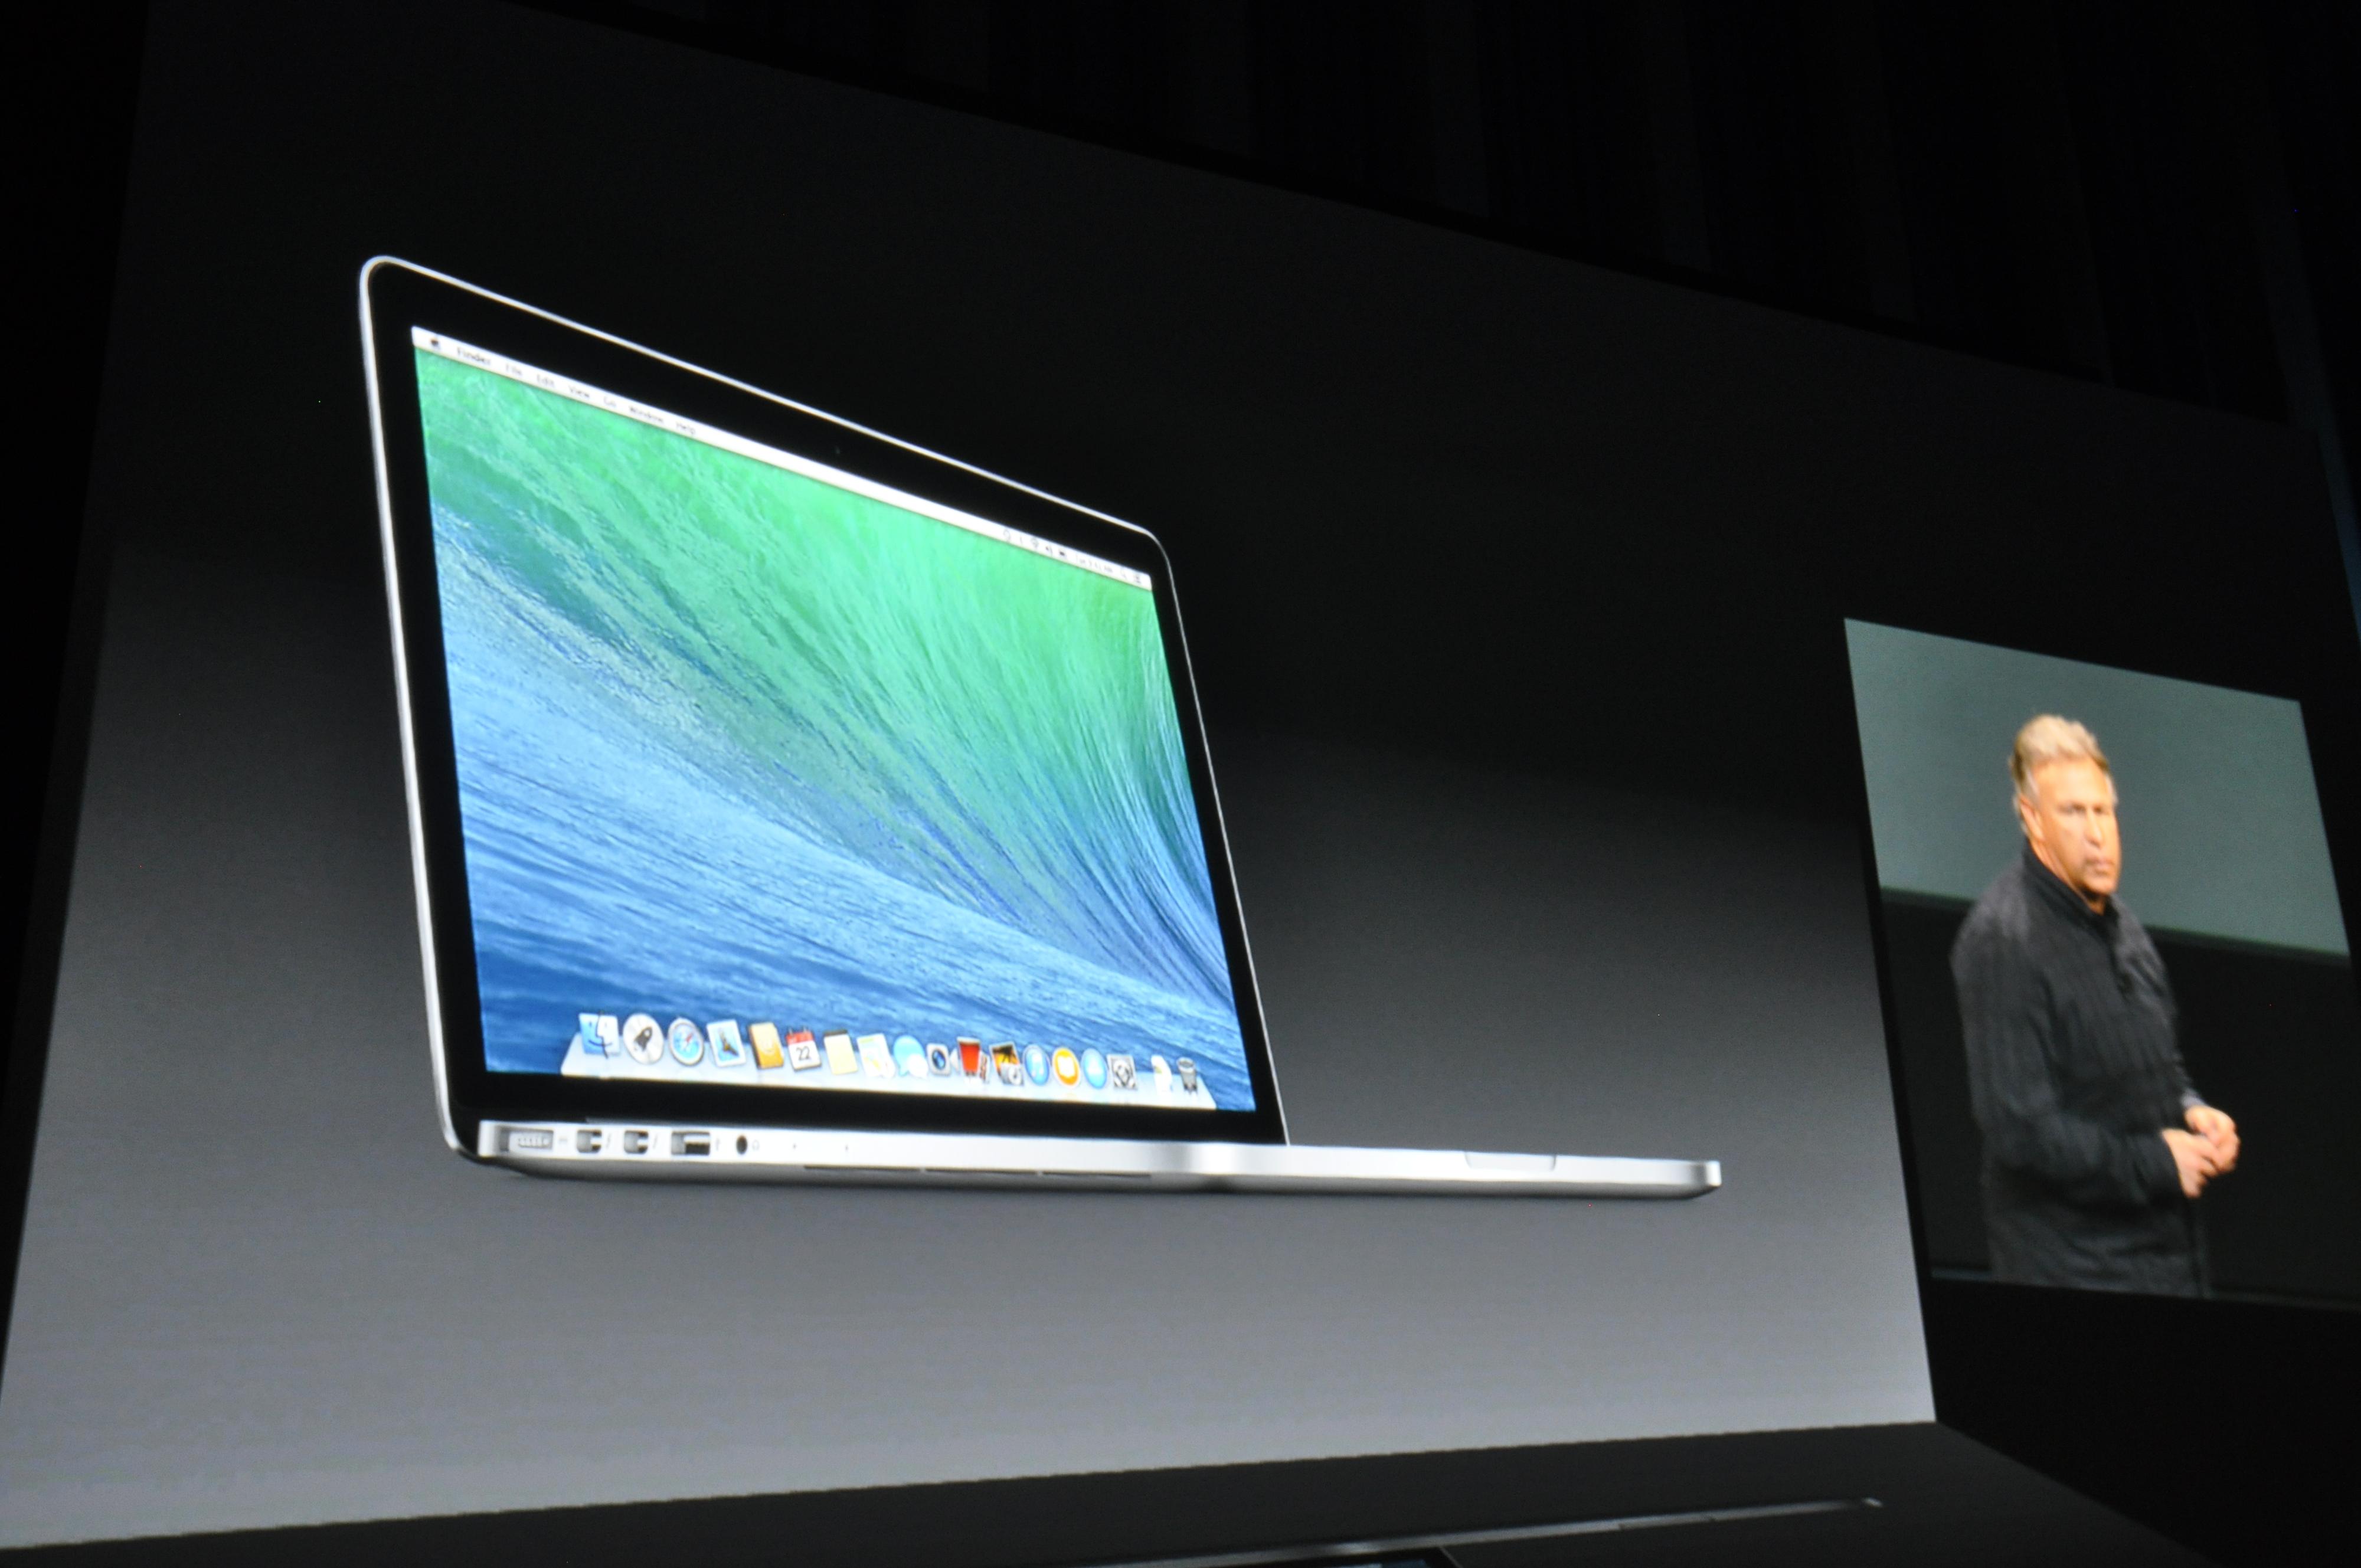 Phil Schiller viser frem nye MacBook-modeller. Foto: Finn Jarle Kvalheim, Amobil.no